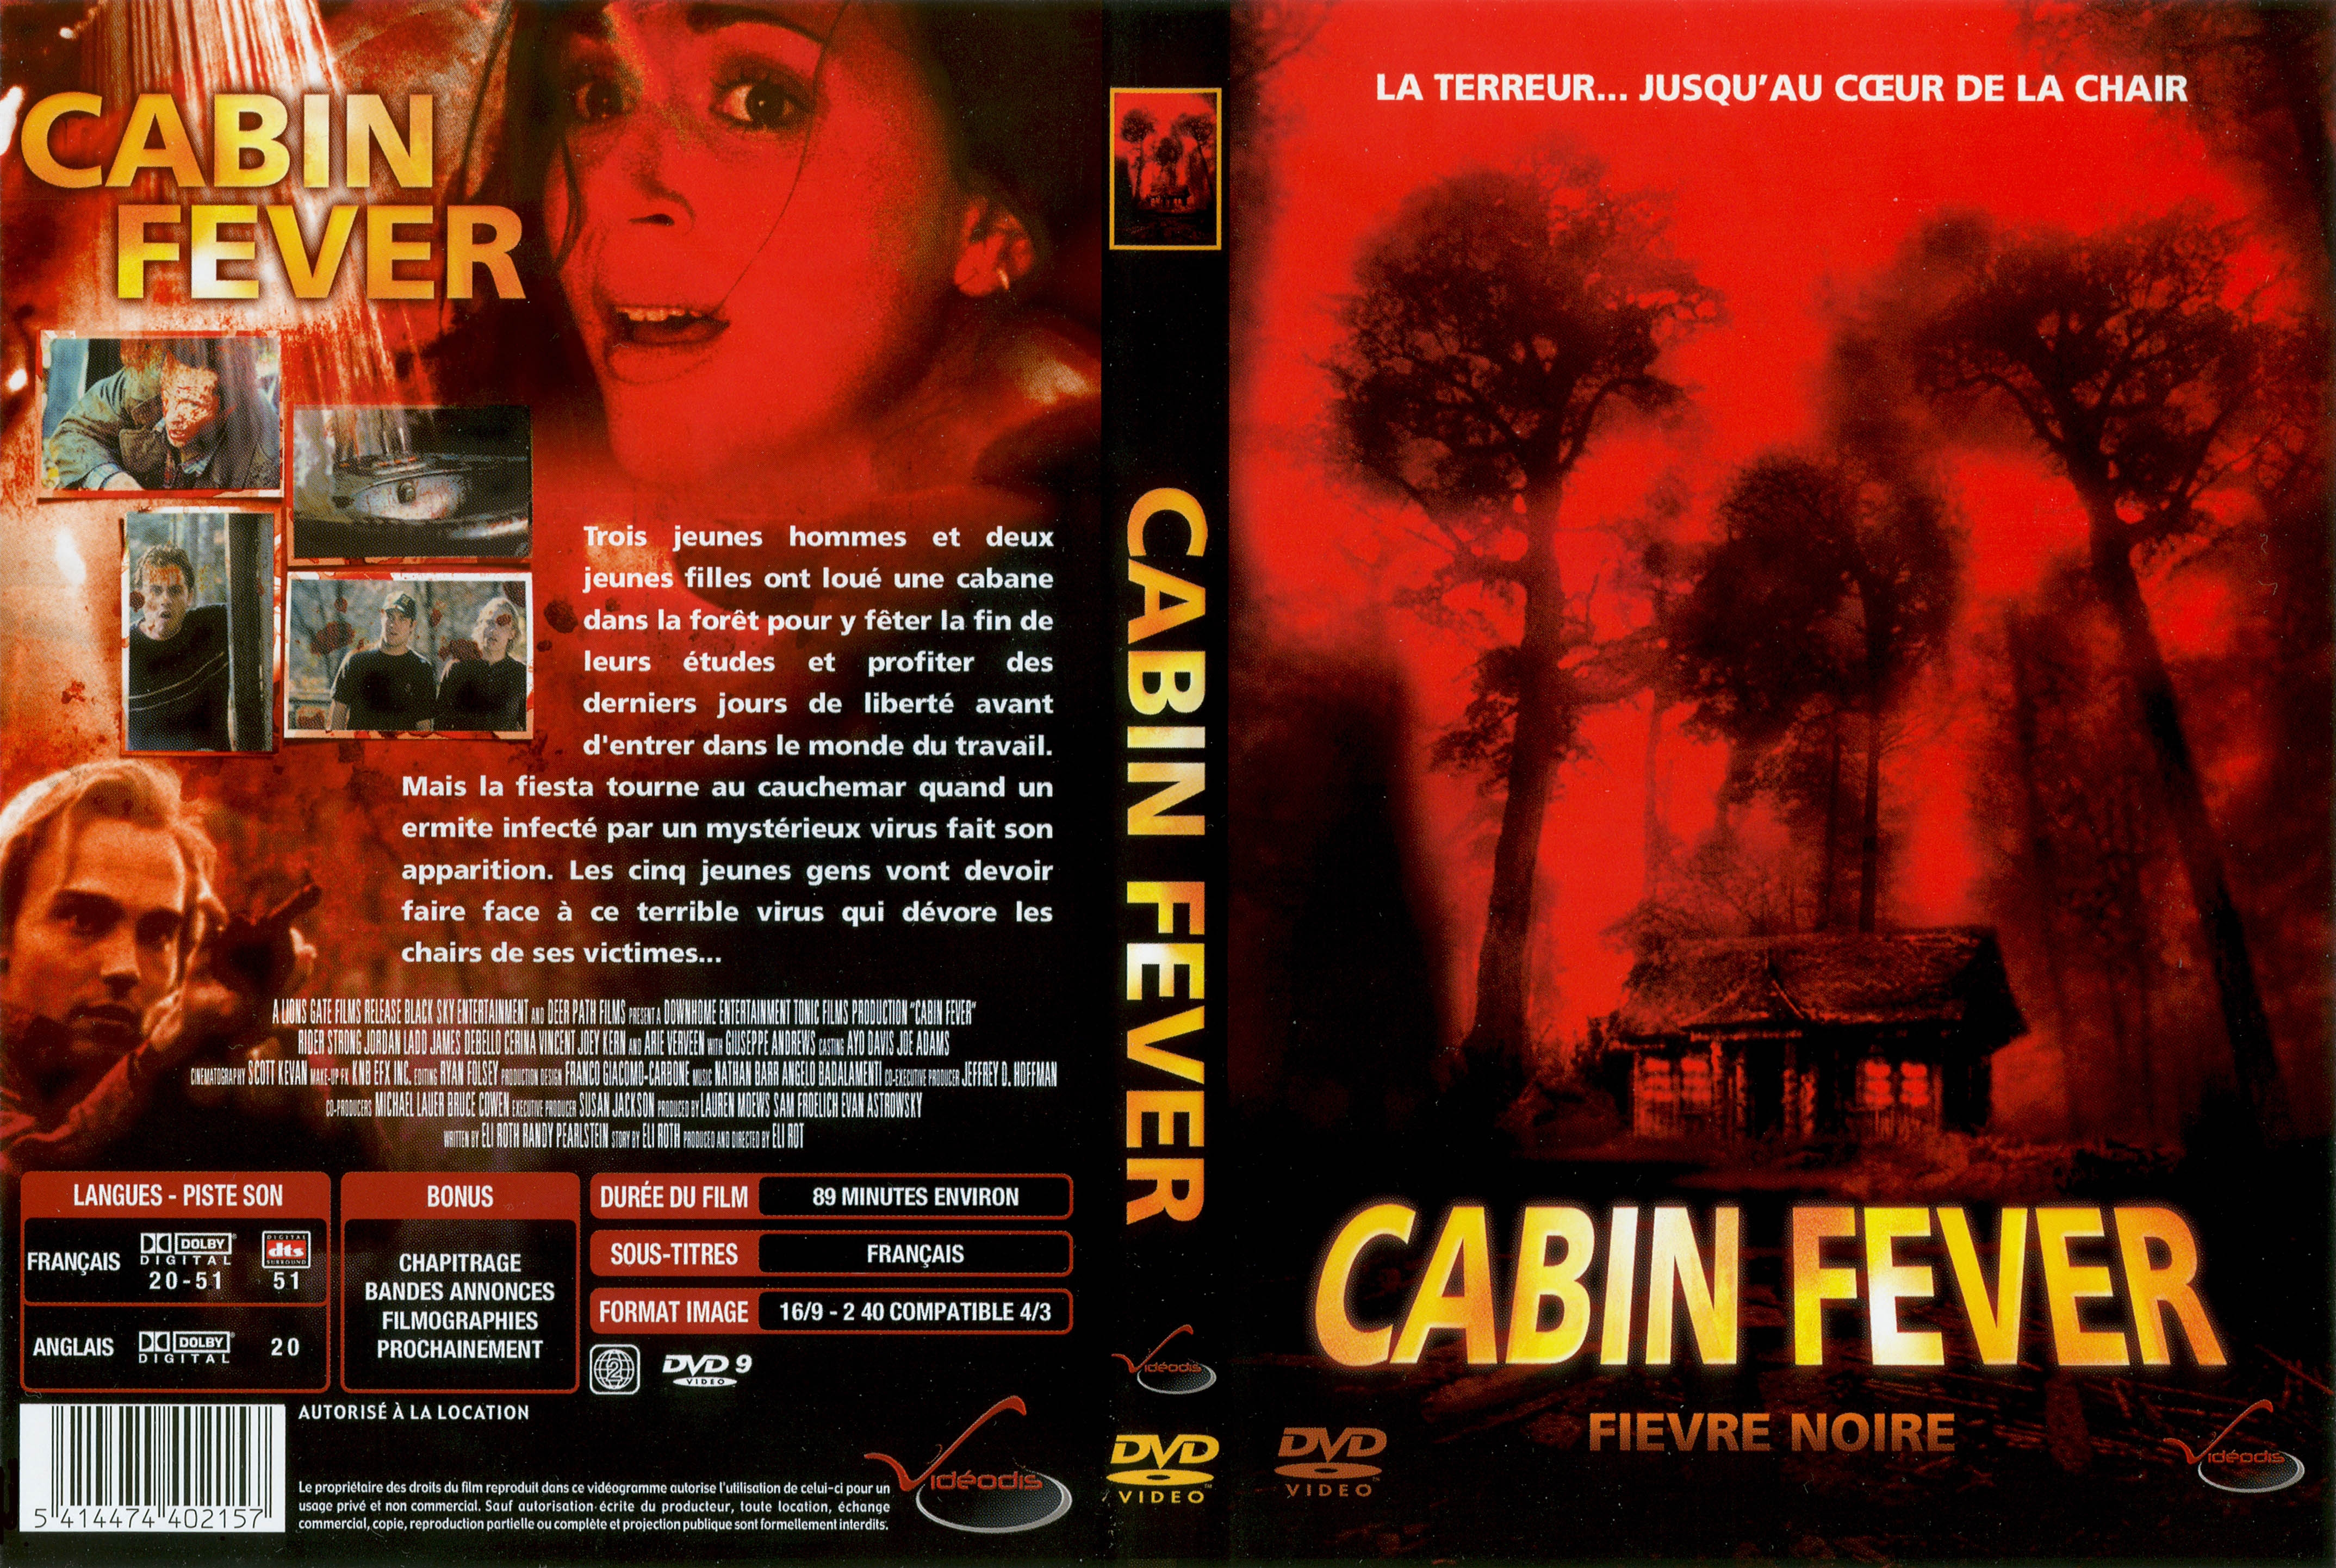 Jaquette DVD Cabin Fever v2